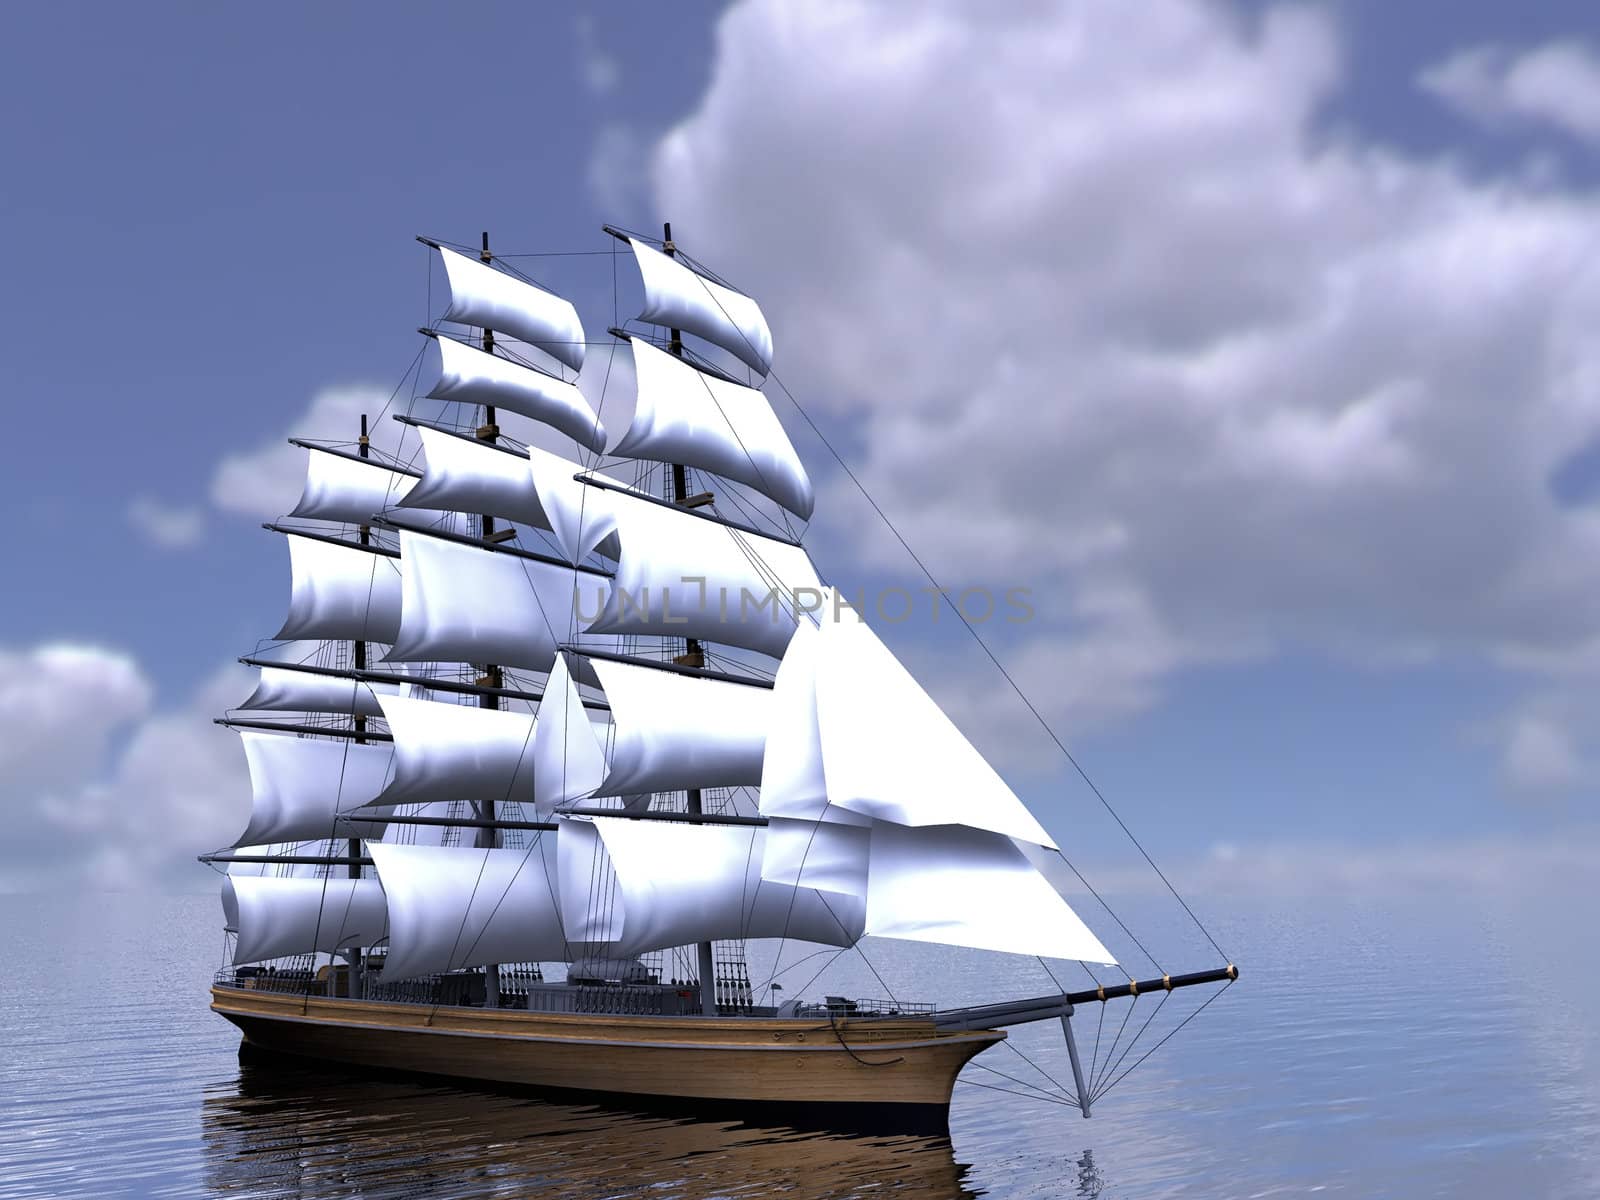 The  three-masted sailing ship